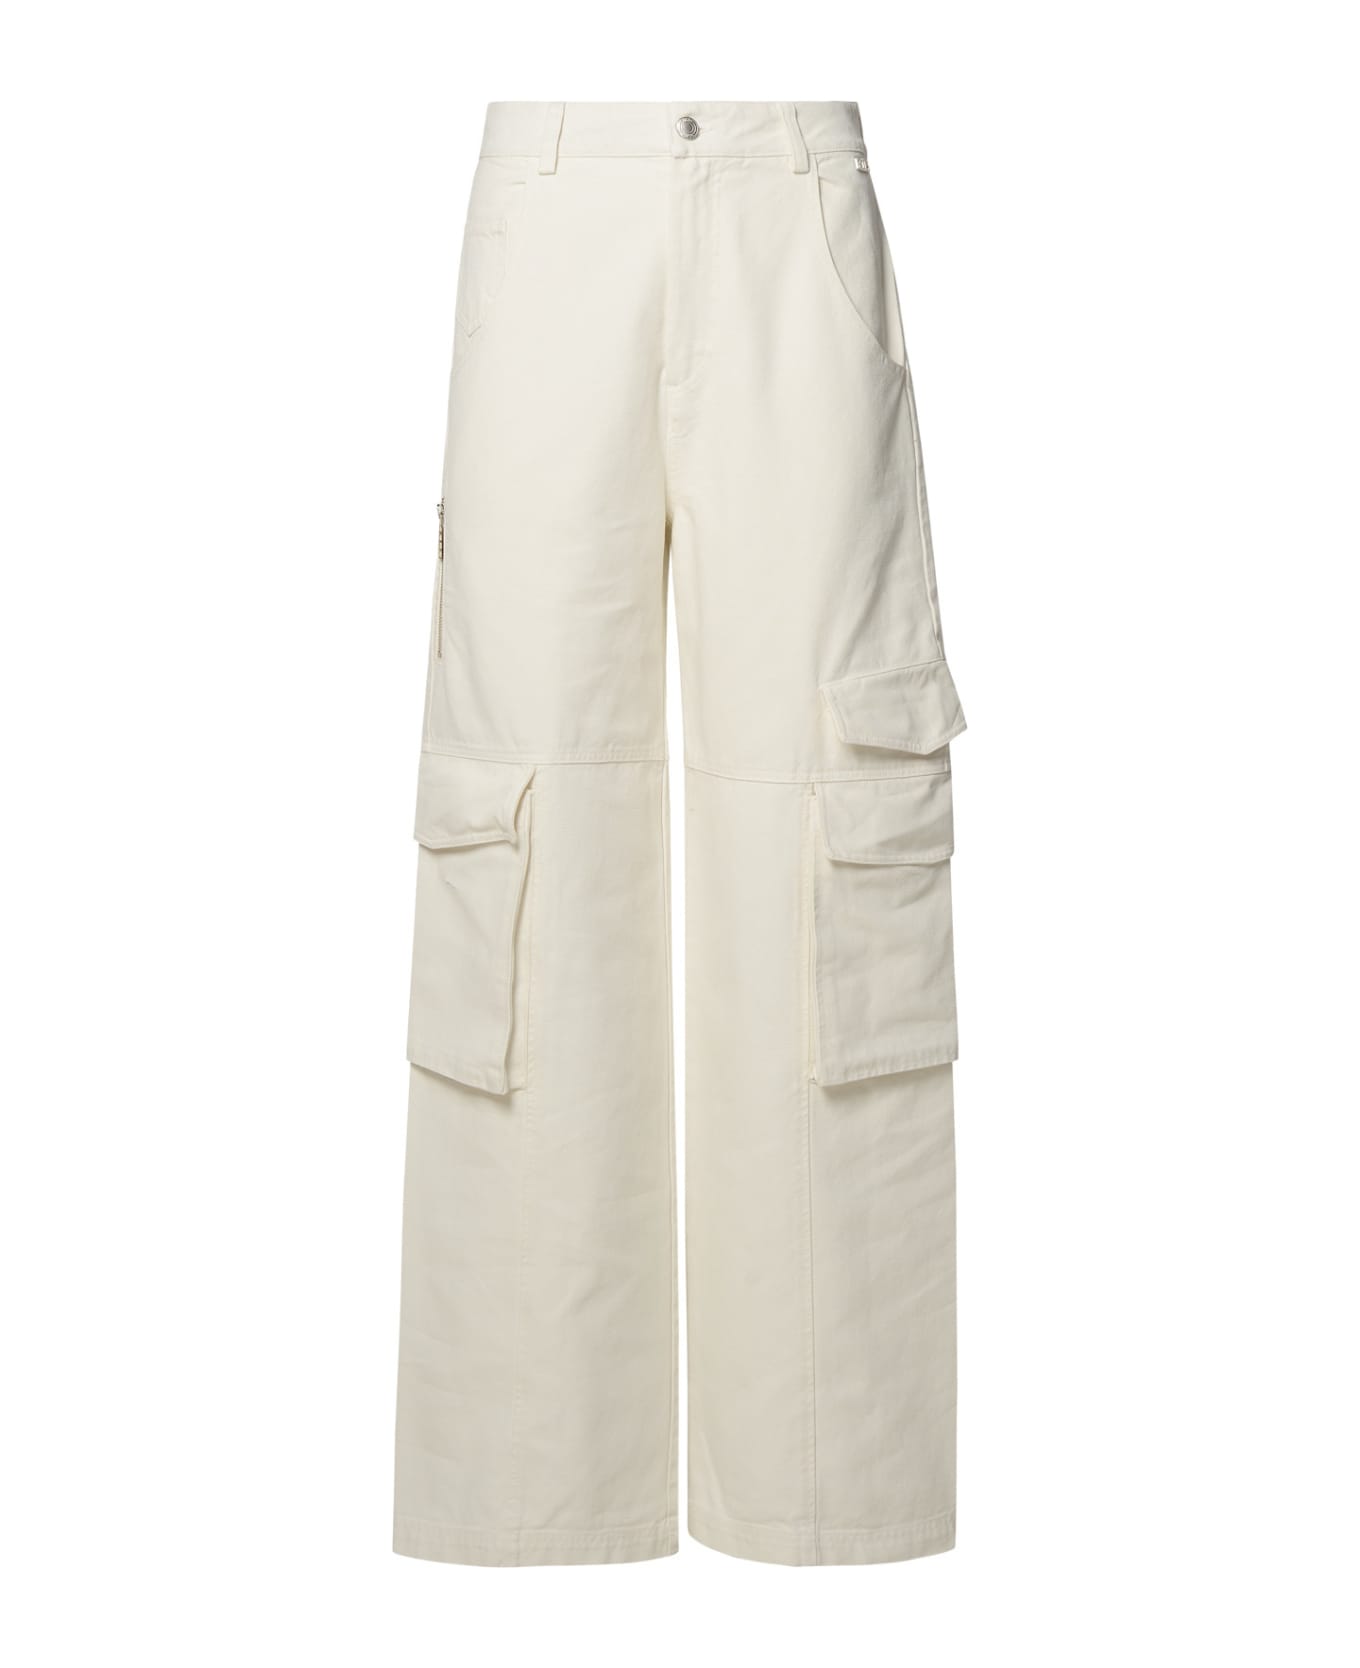 GCDS White Cotton Jeans - Bianco sporco ボトムス